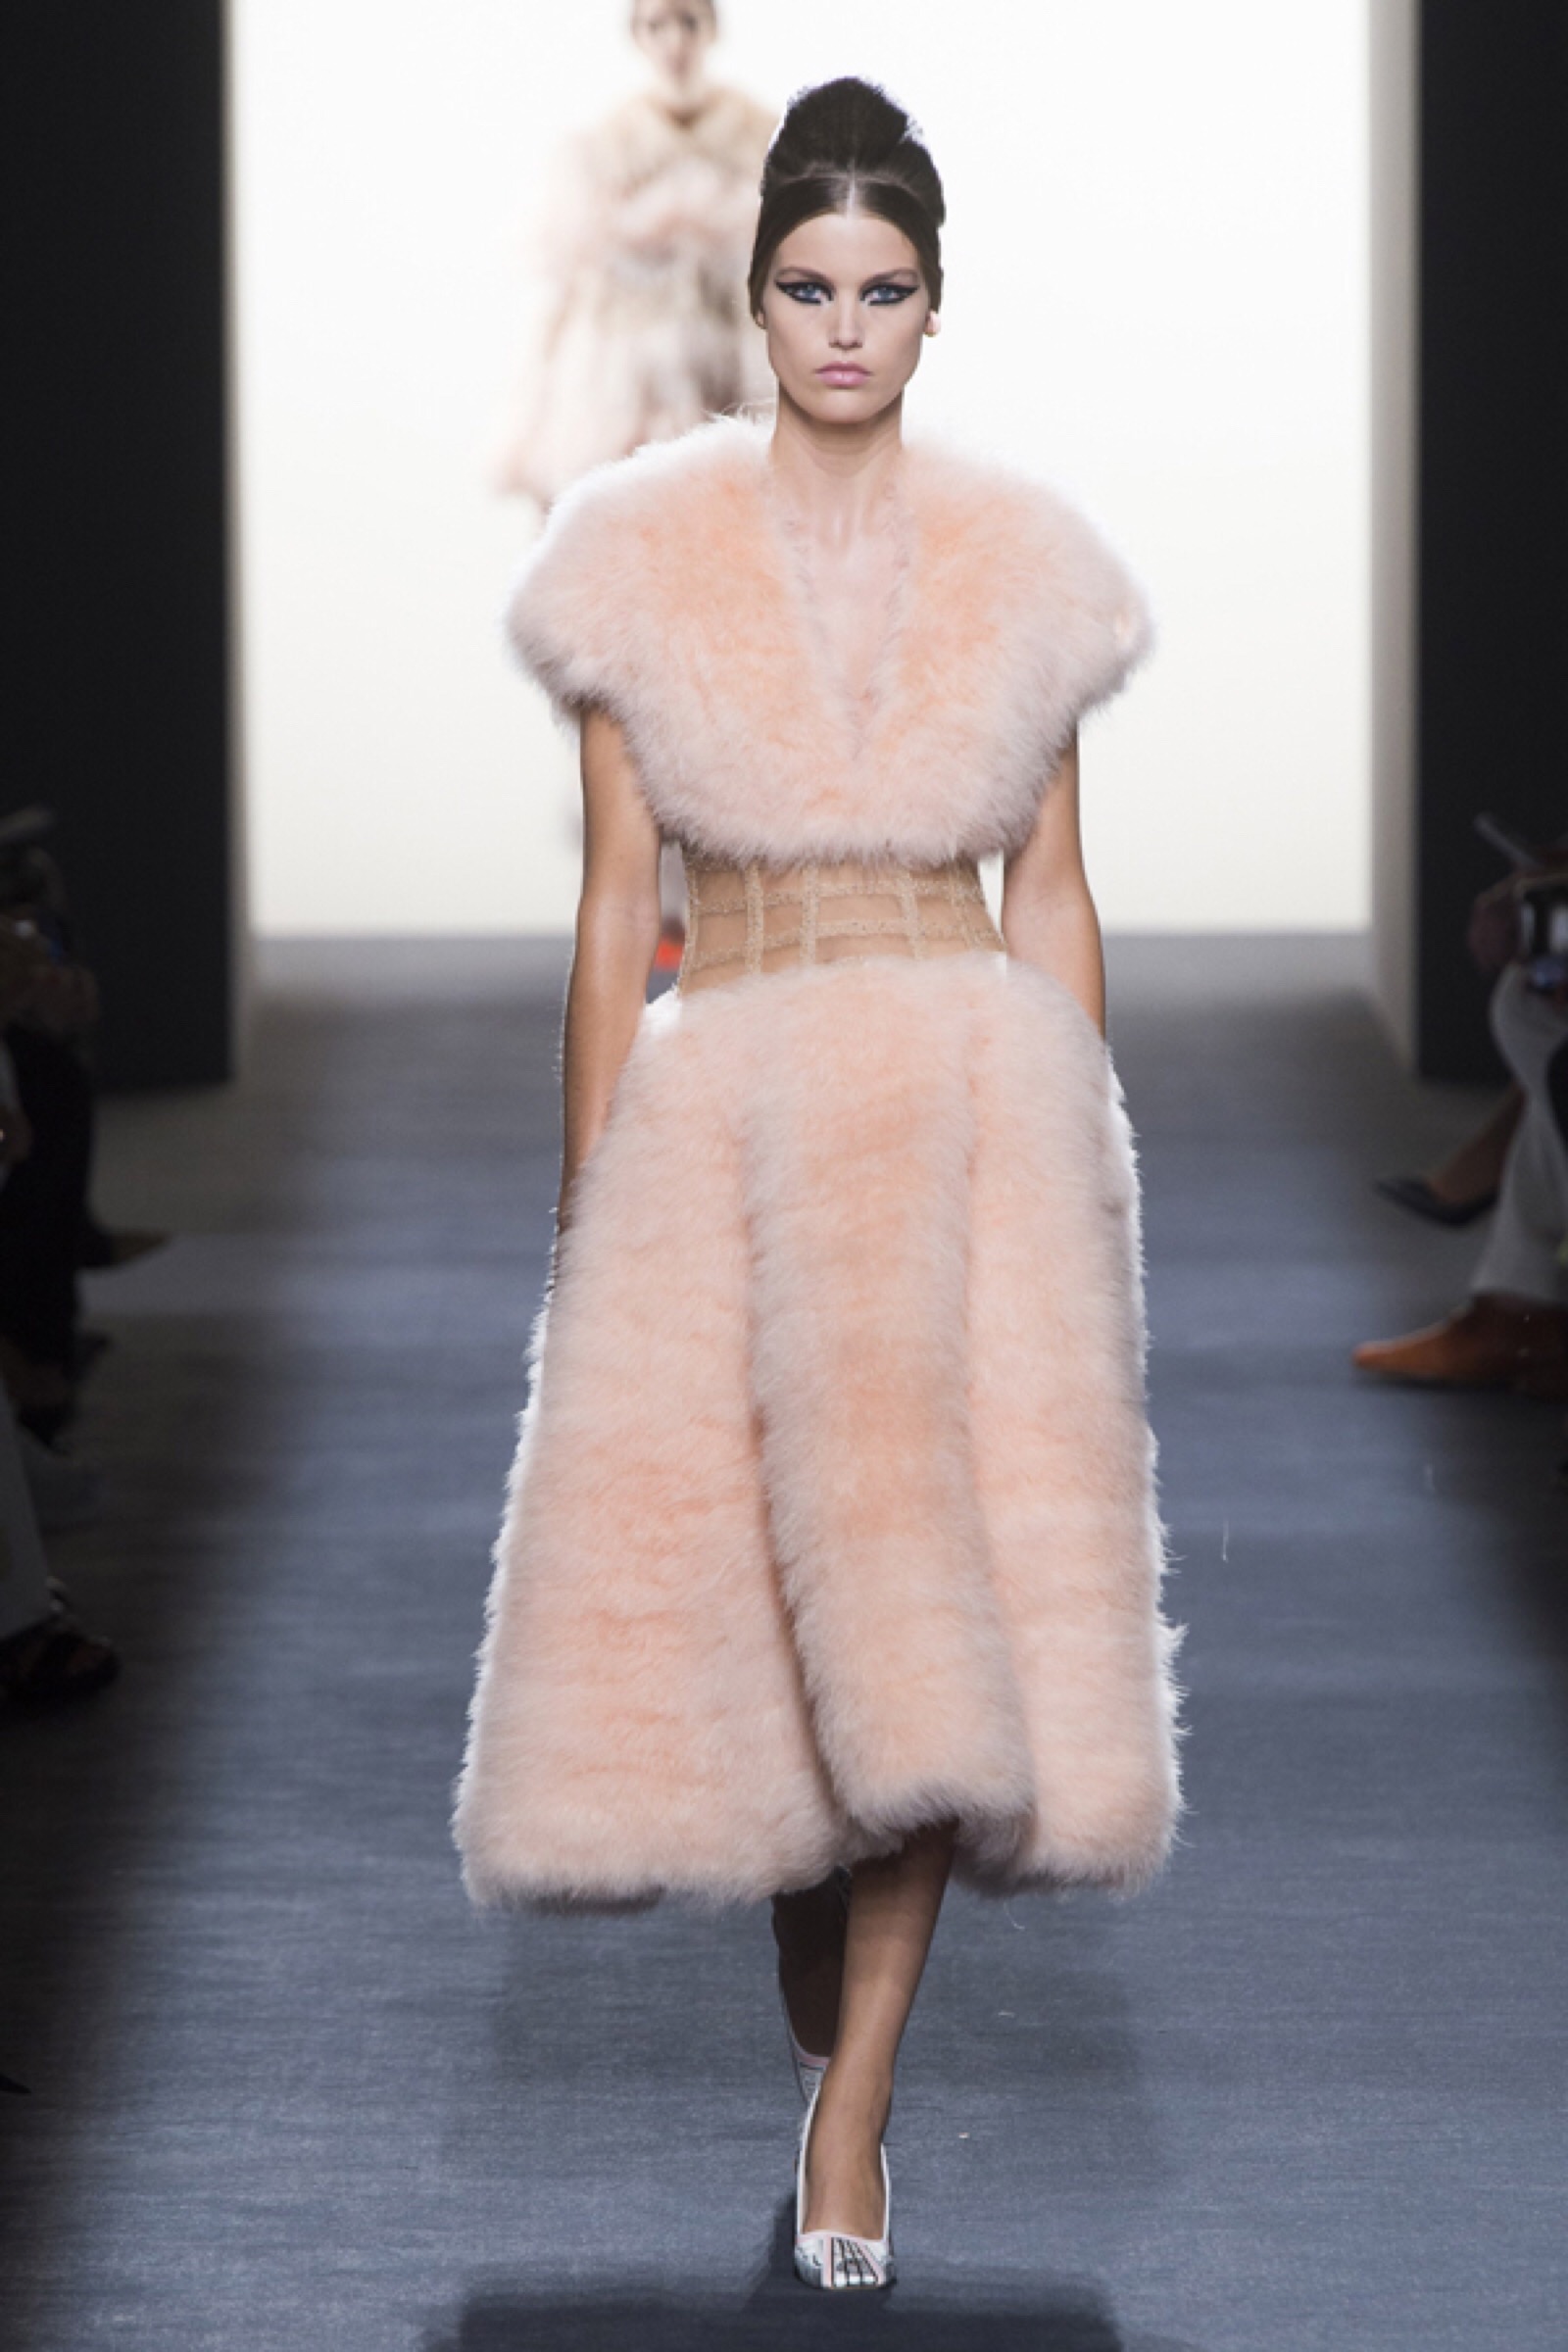 fendi(芬迪)于巴黎高定时装周发布2018秋冬高级定制系列